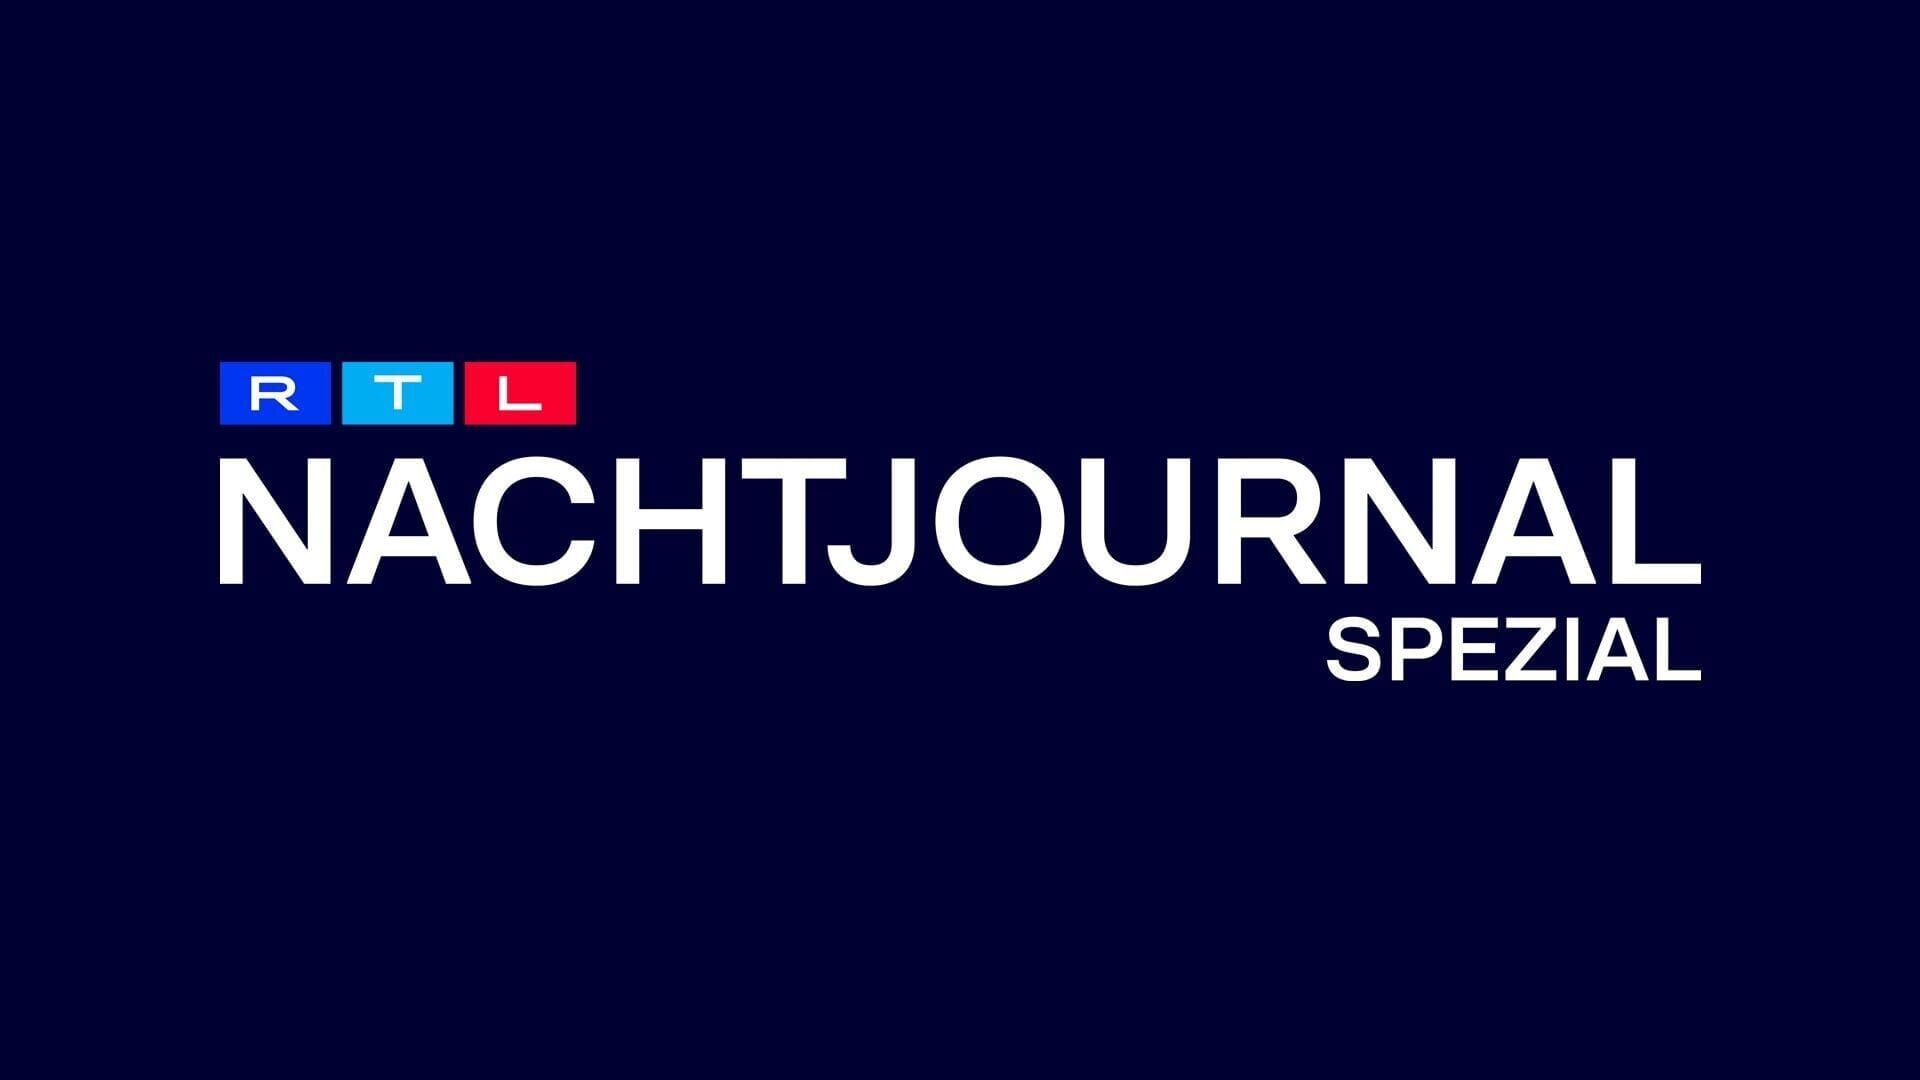 RTL Nachtjournal Spezial: Alexander Gerst im Interview